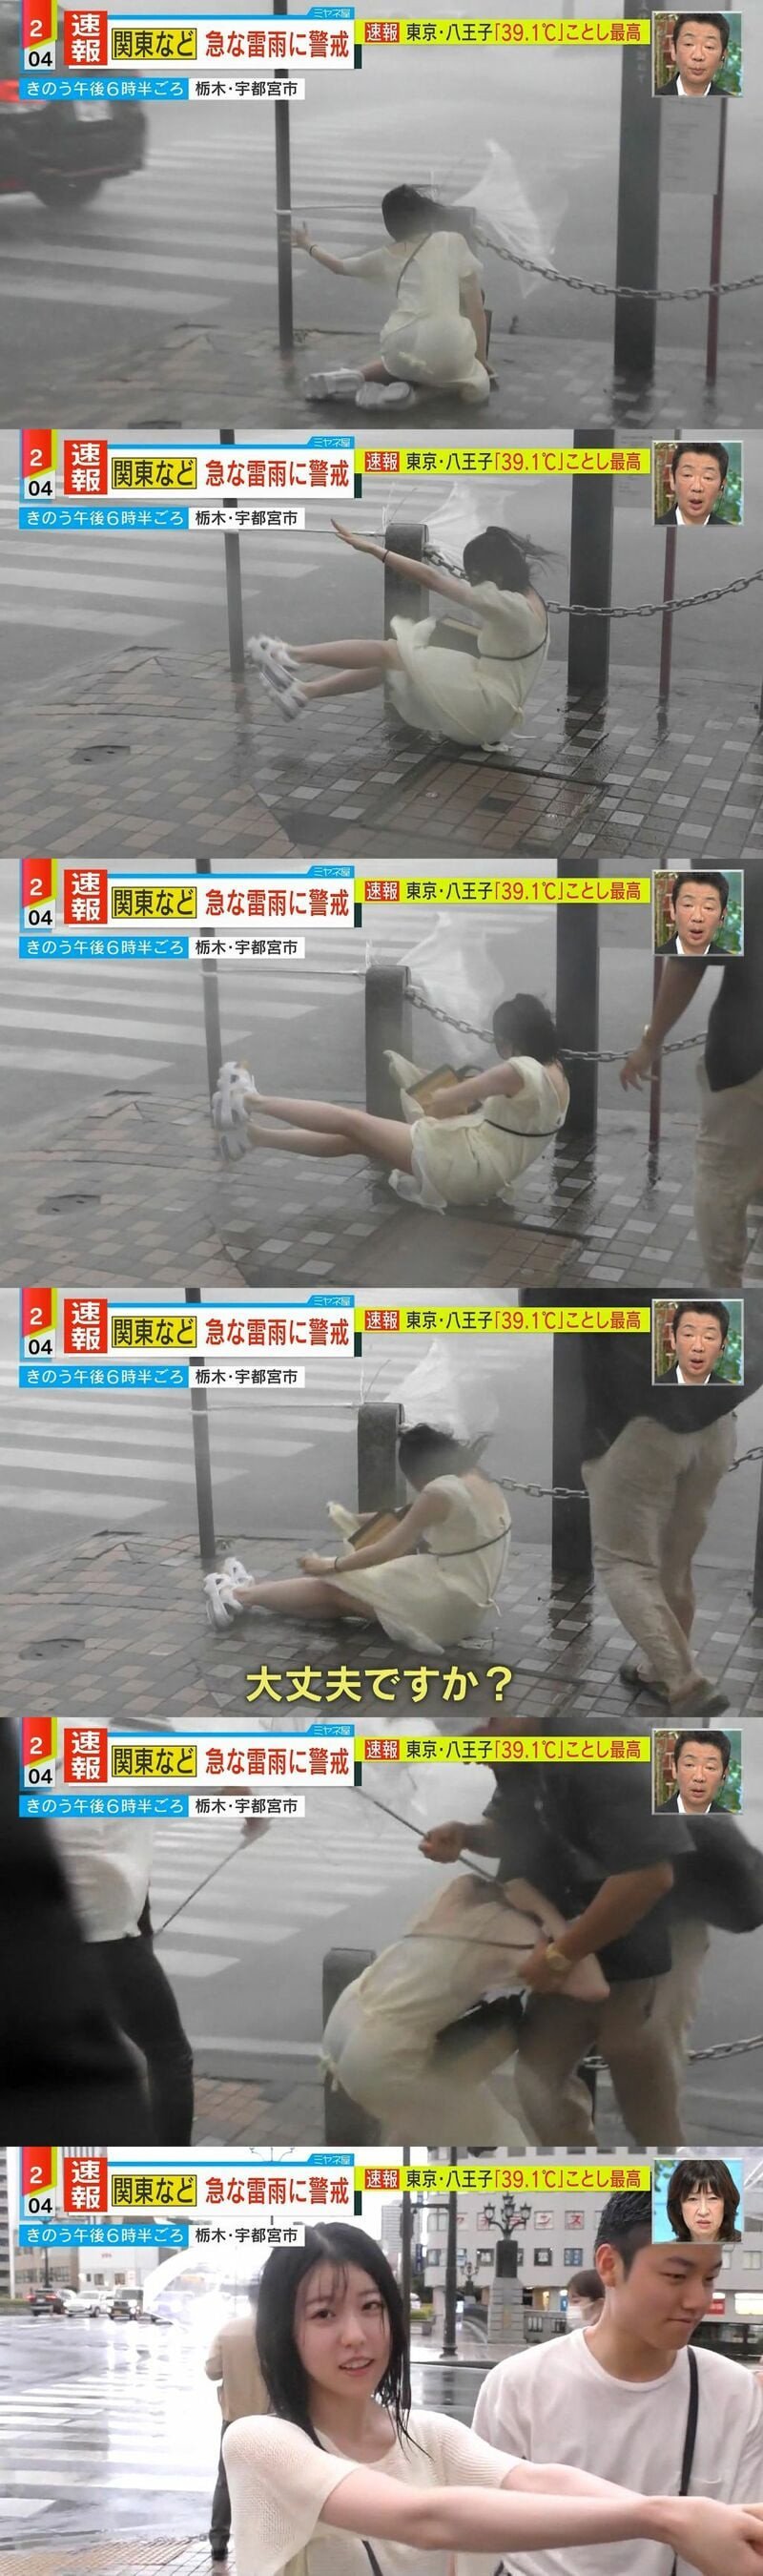 비바람에 쓰러지는 일본 여성.jpg